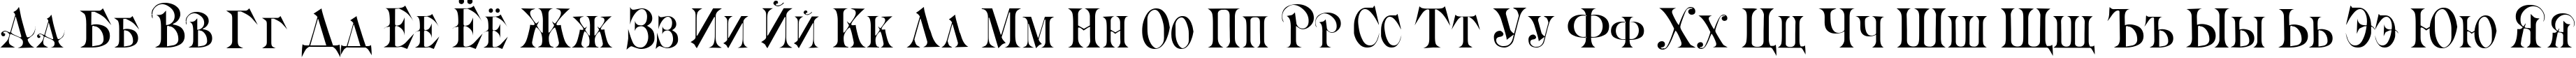 Пример написания русского алфавита шрифтом Briolin